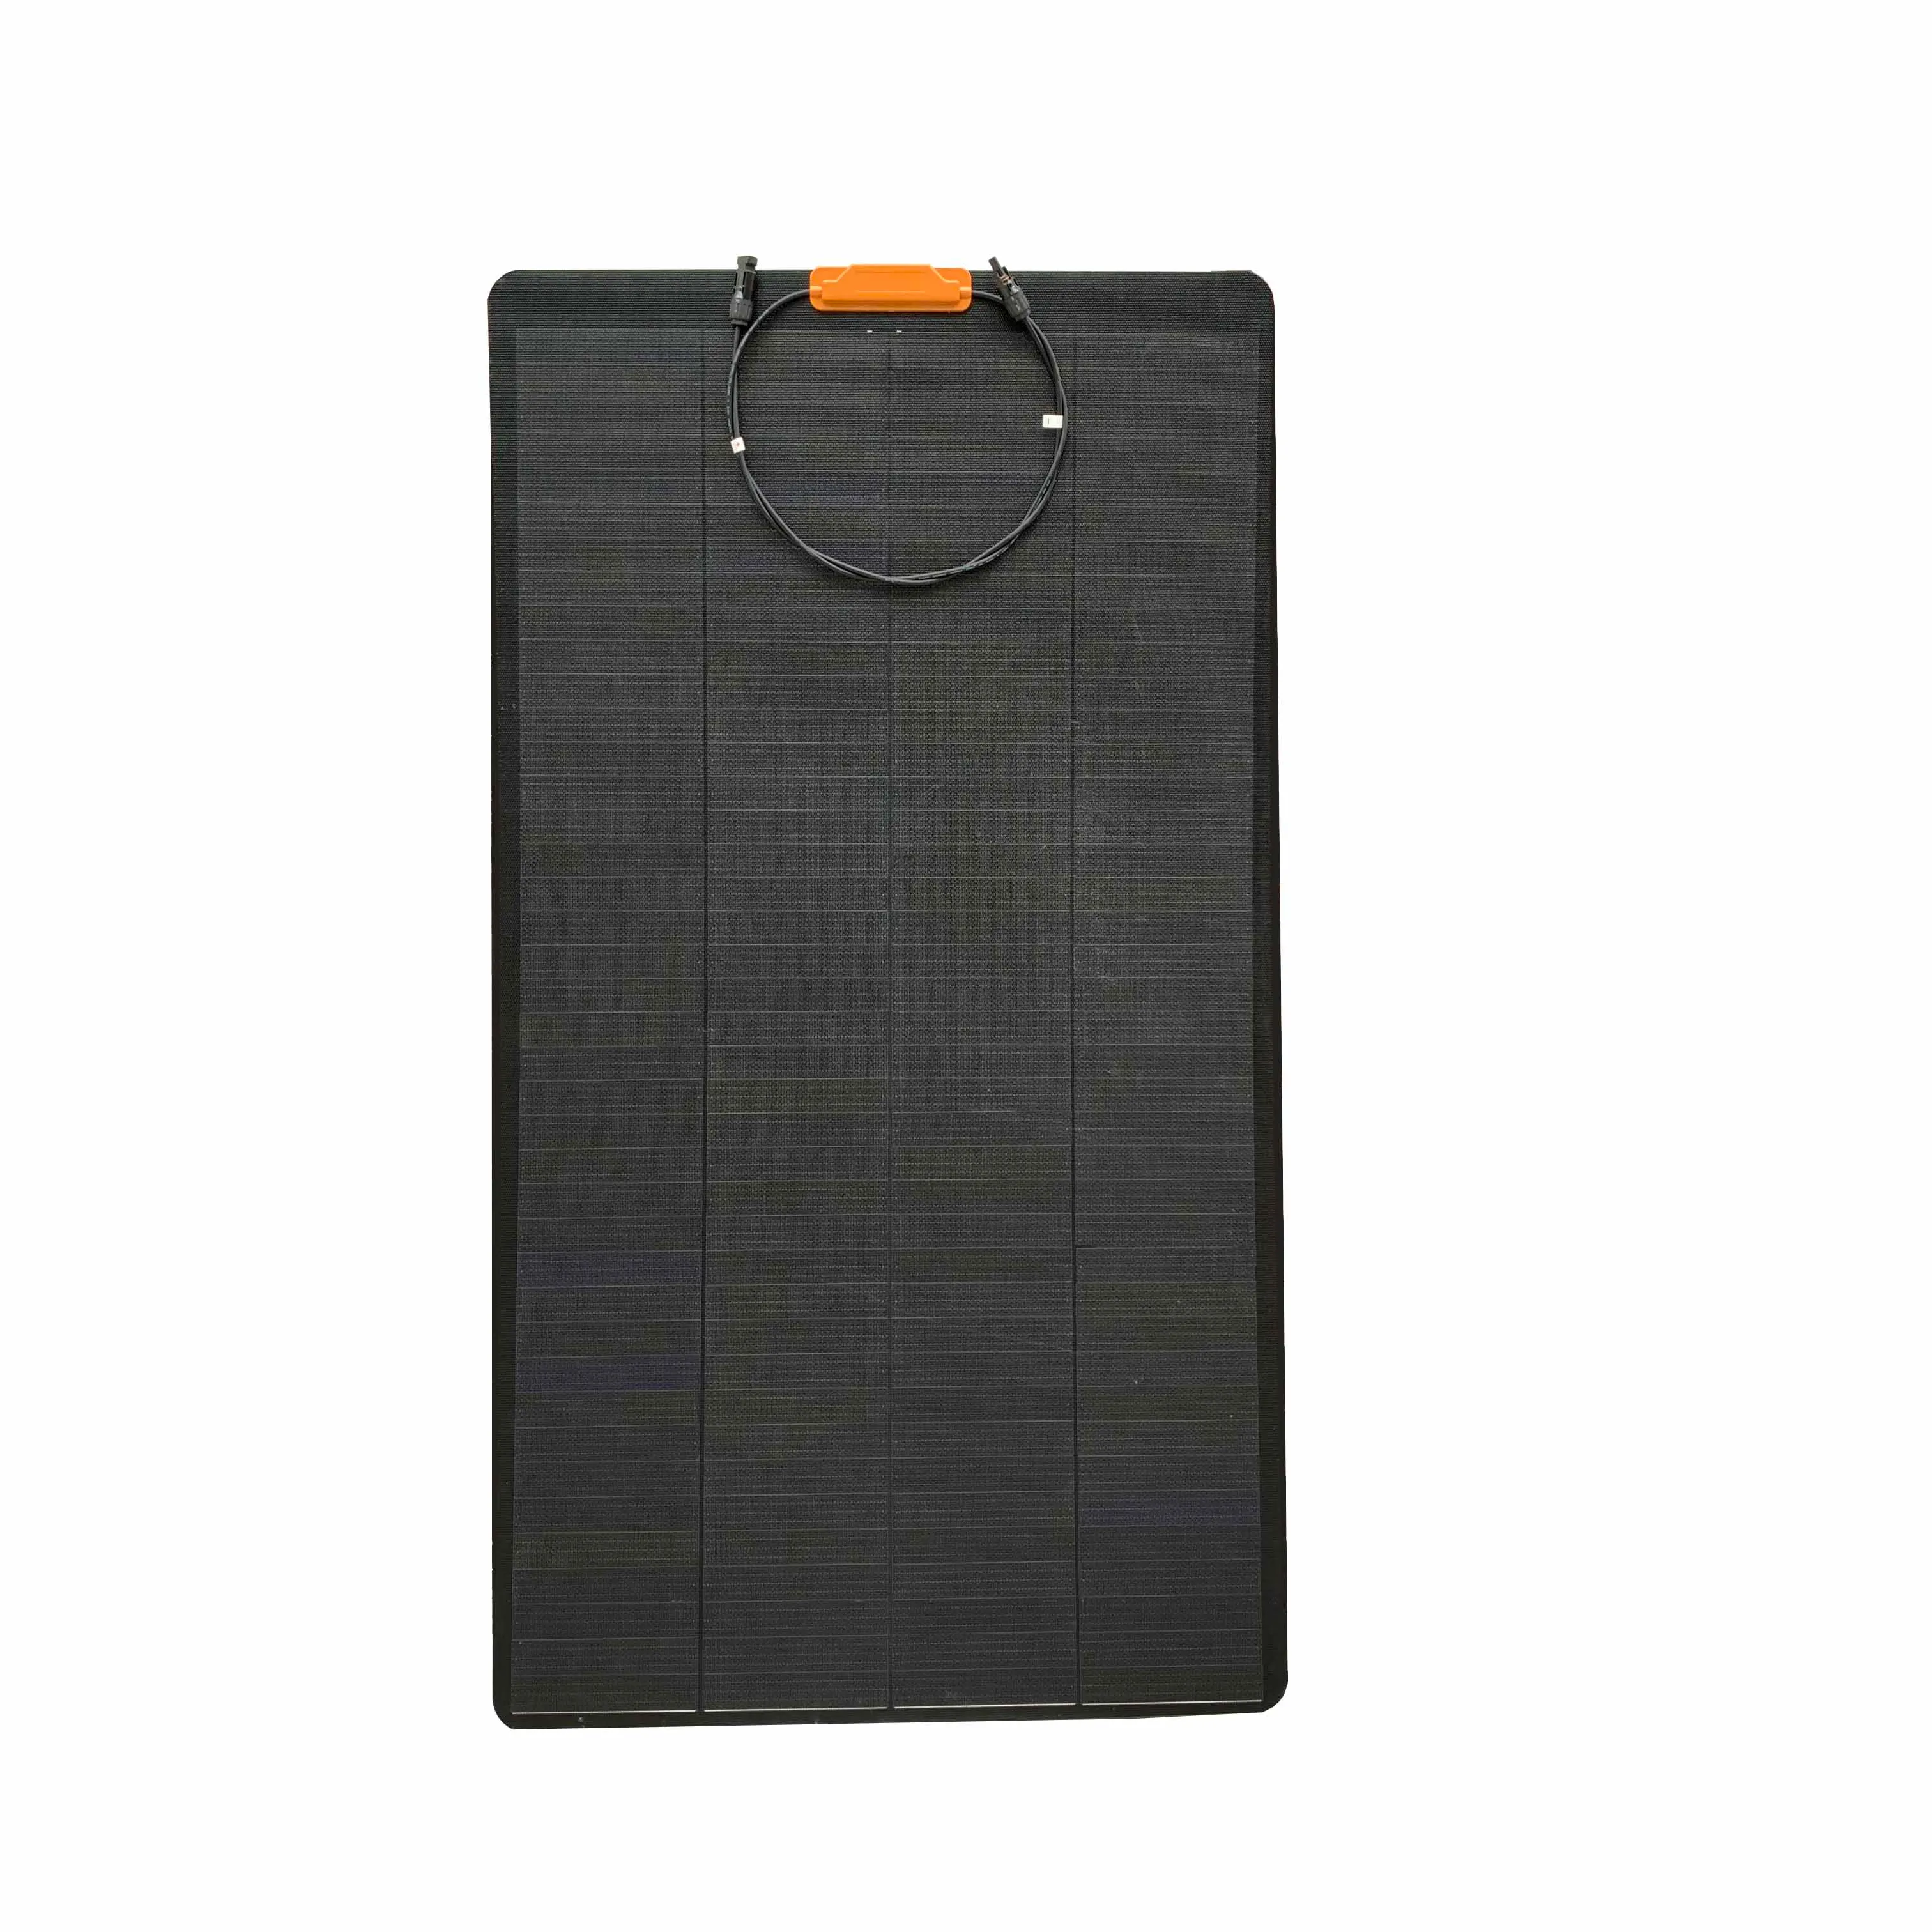 Nuovo Design del pannello solare pannello solare flessibile 150W tutto nero etfe pannello solare flessibile per CAMPER campeggio marino